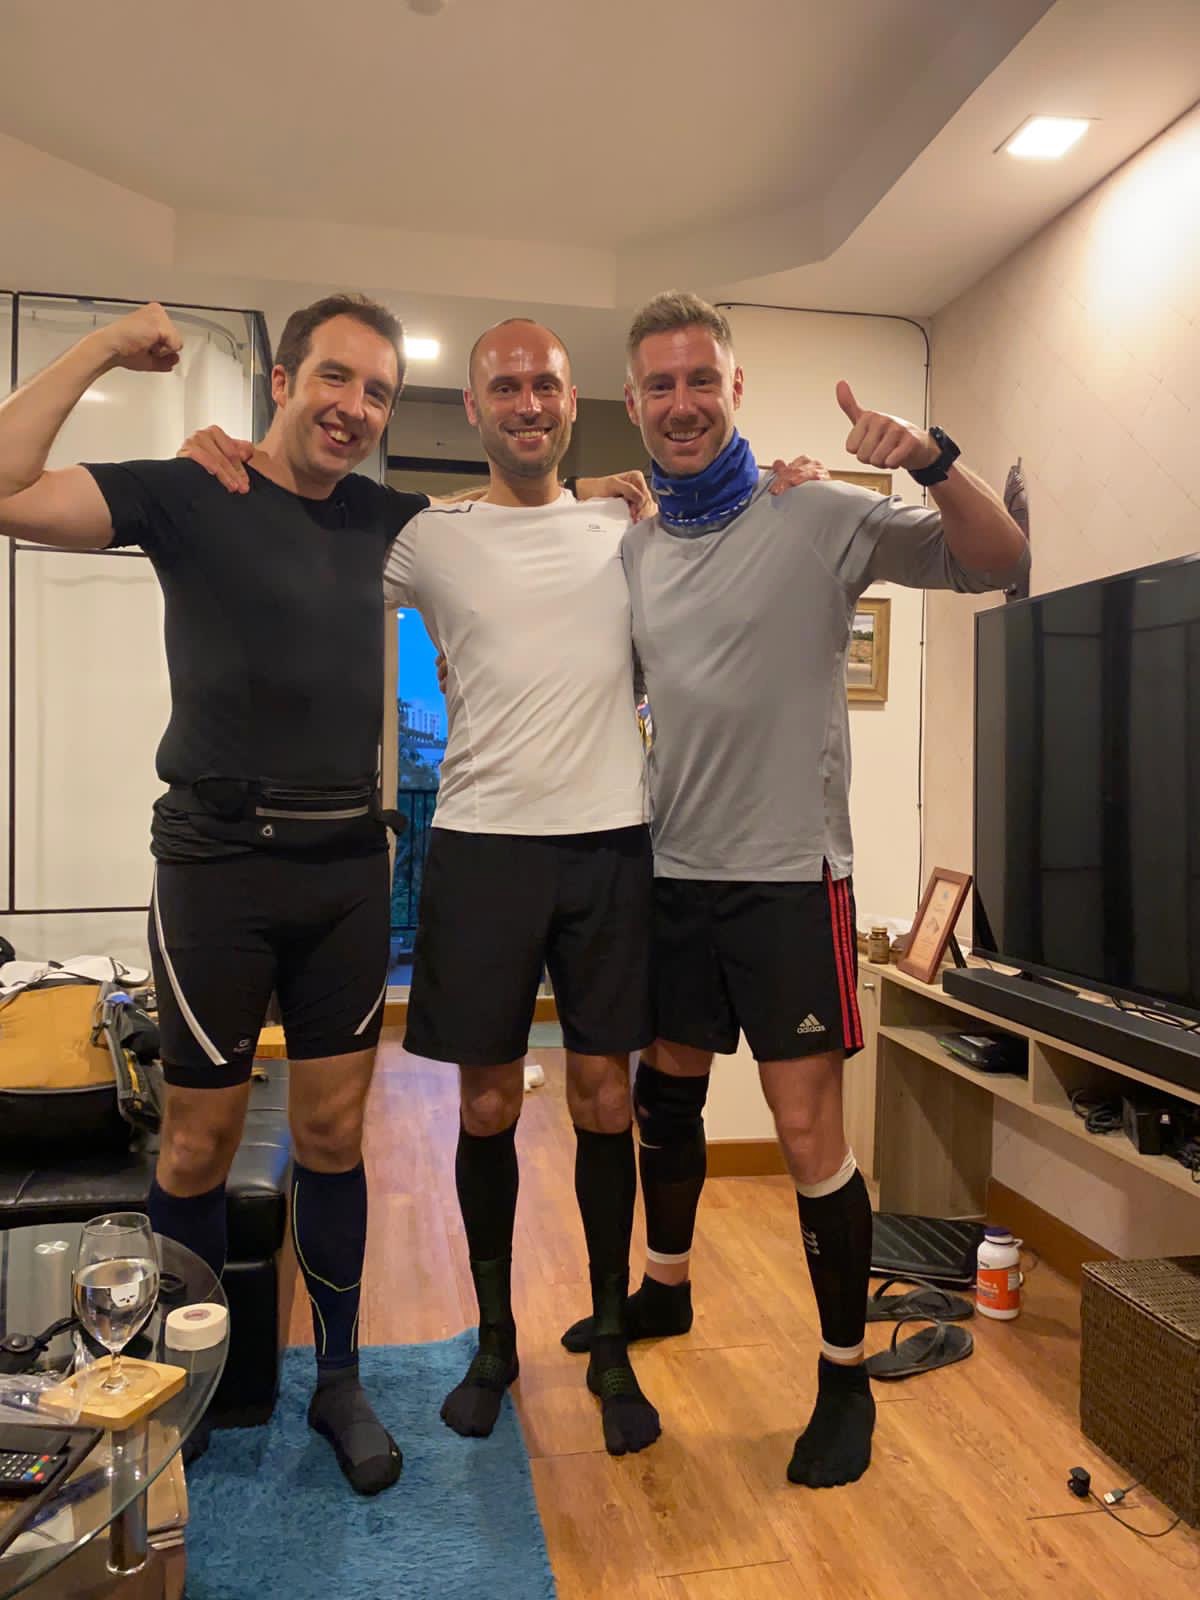 3 men in running gear posing in a small living room